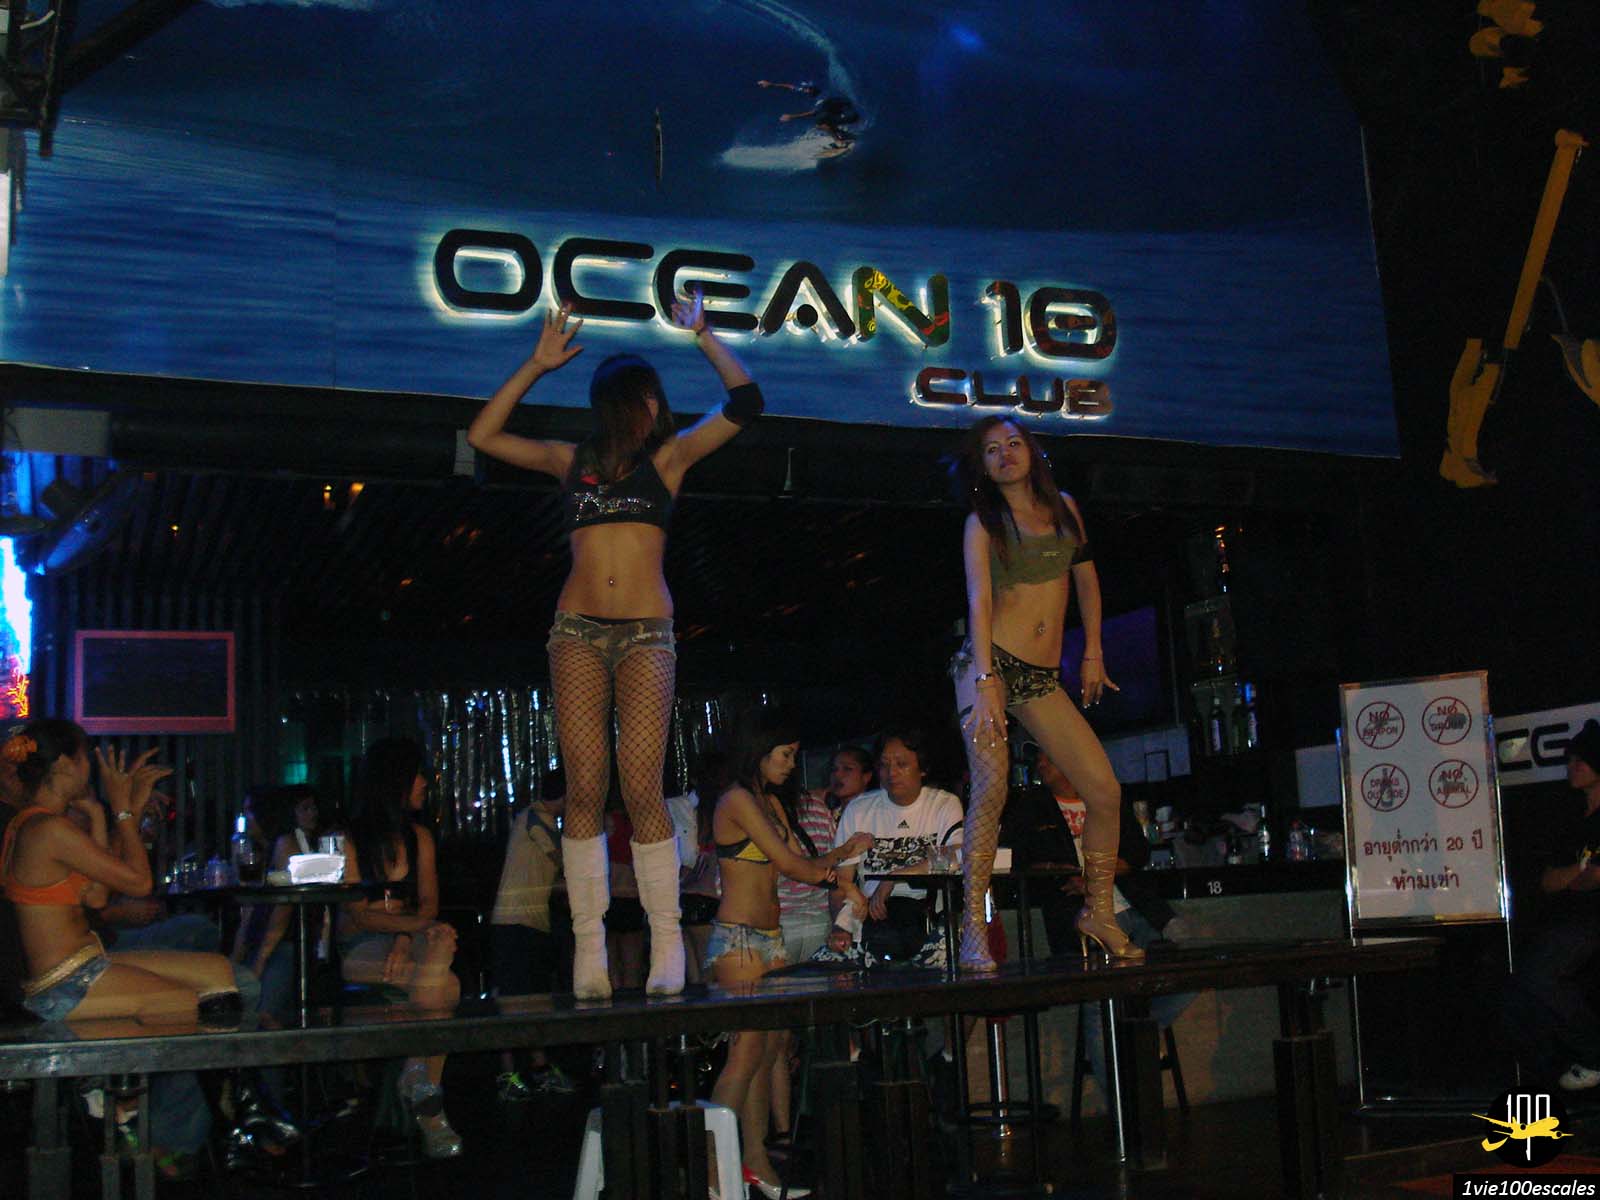 Des femmes qui dansent sur le bar du Ocean 10 Club de la walking street de Pattaya